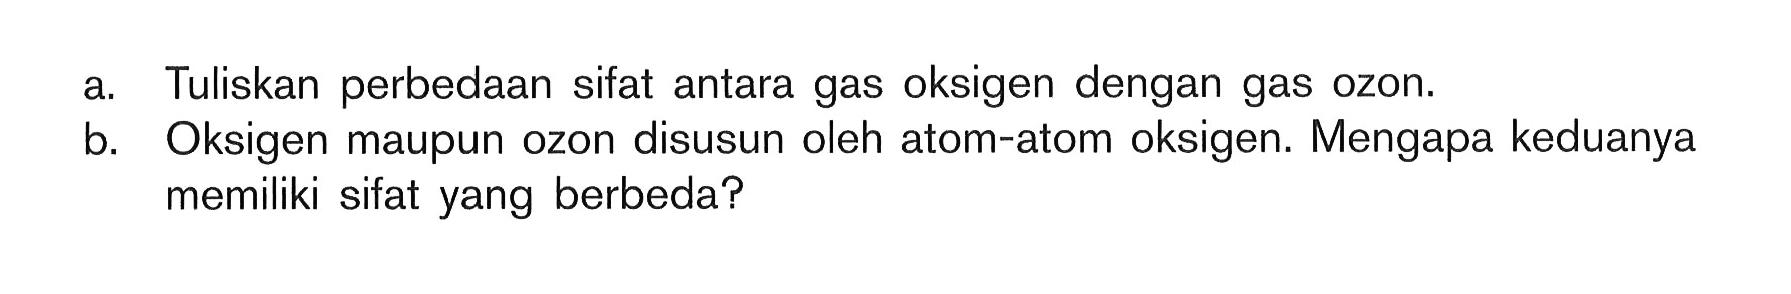 a. Tuliskan perbedaan sifat antara gas oksigen dengan gas ozon.b. Oksigen maupun ozon disusun oleh atom-atom oksigen. Mengapa keduanya memiliki sifat yang berbeda?